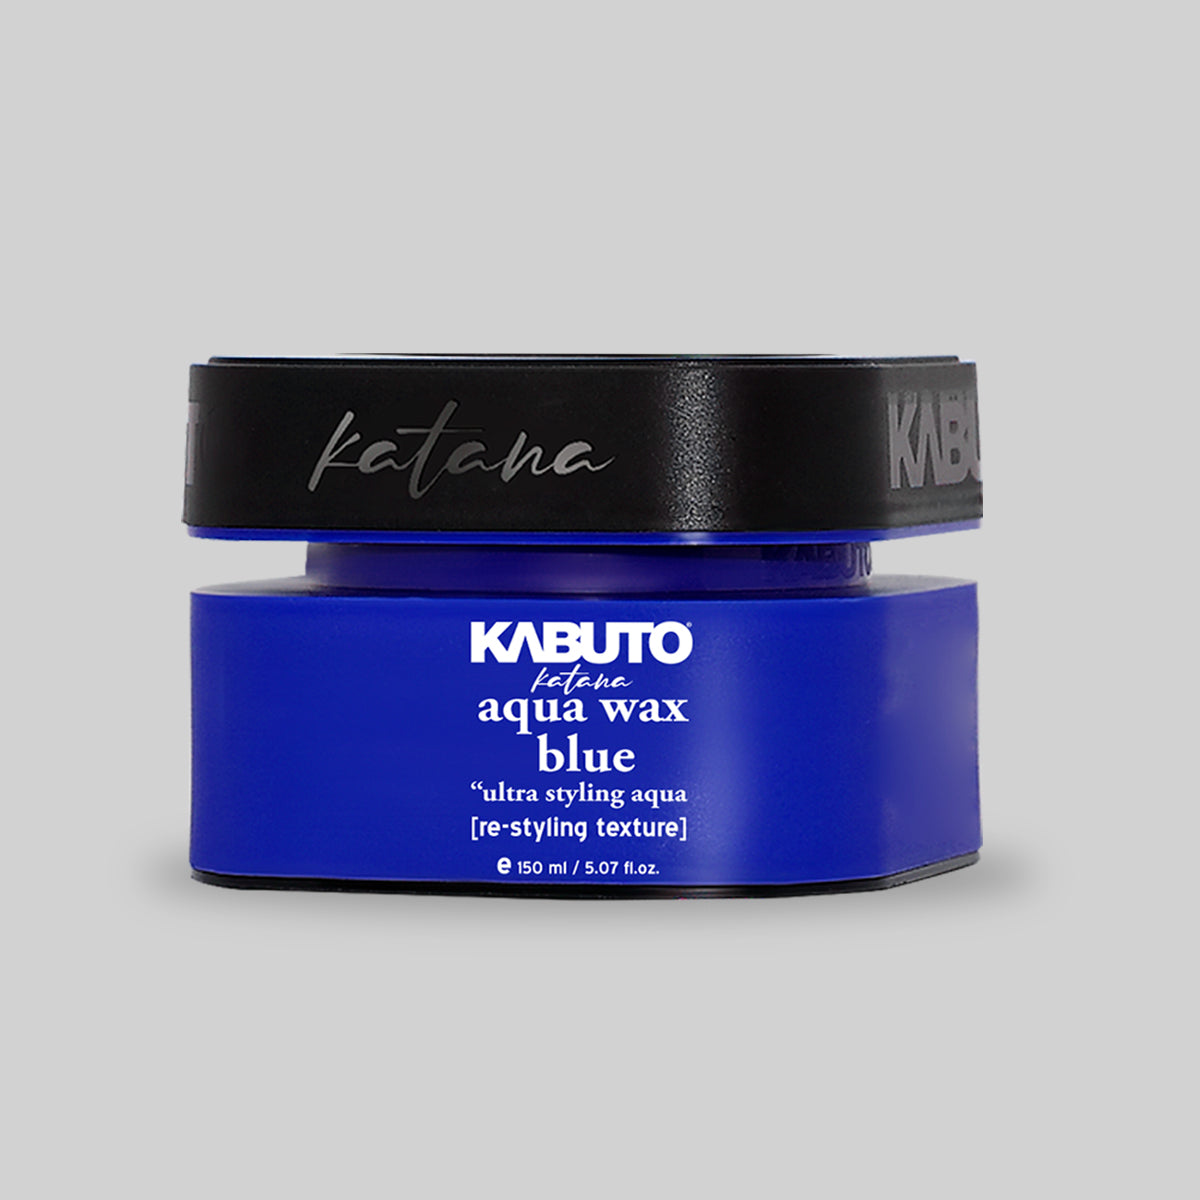 KABUTO Katana Aqua Wax Blue 150ml